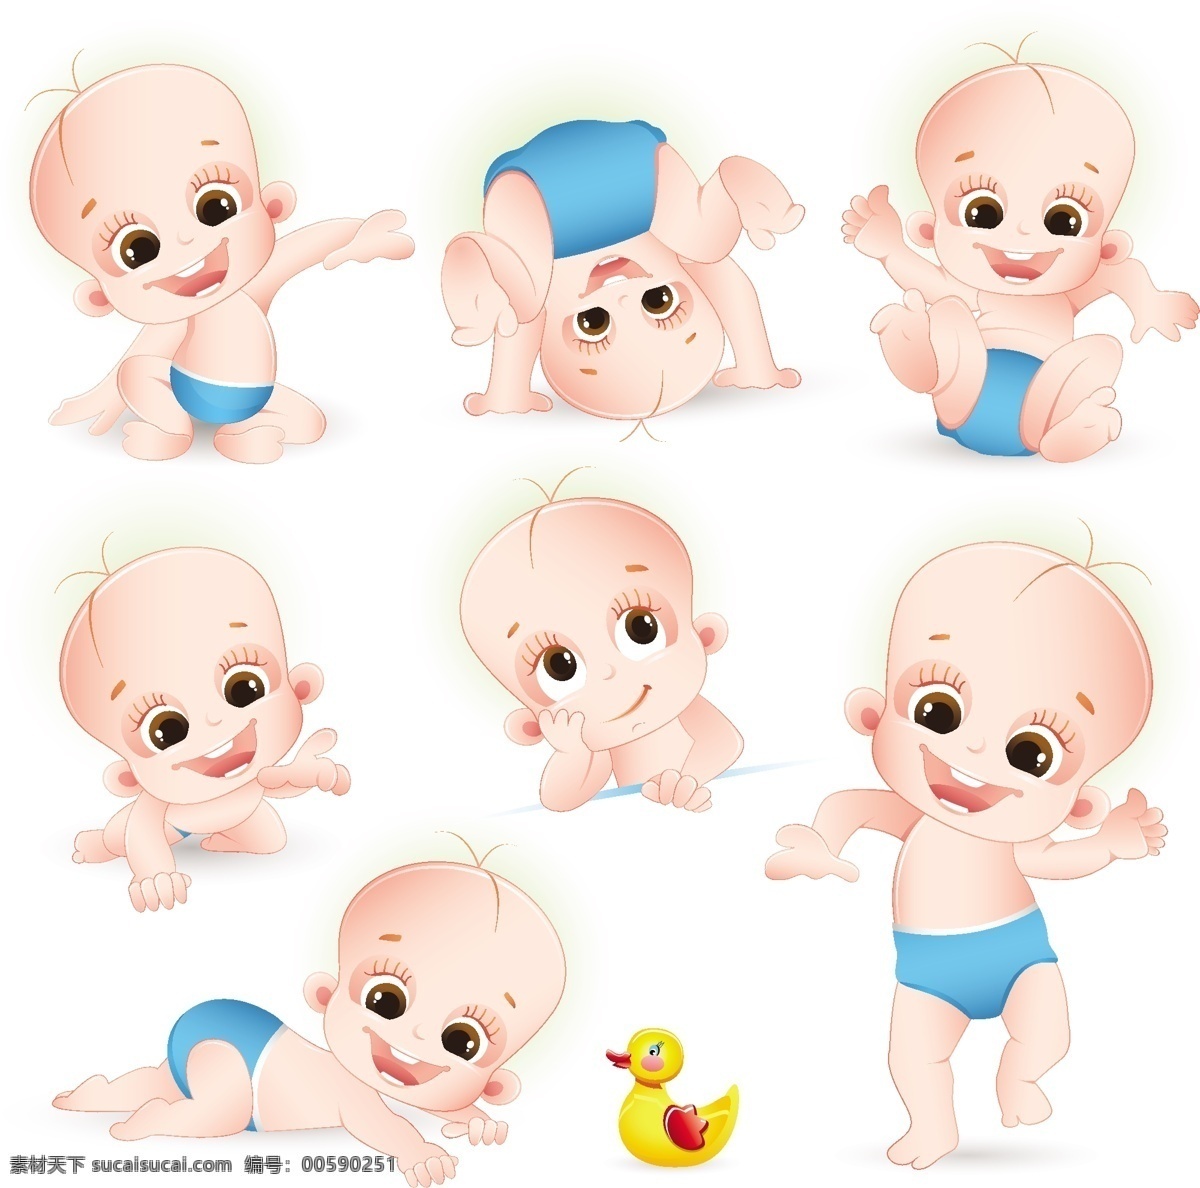 可爱 卡通 婴儿 矢量 baby 尿布 矢量图 小孩矢量图 婴儿矢量图 可爱小孩 白色